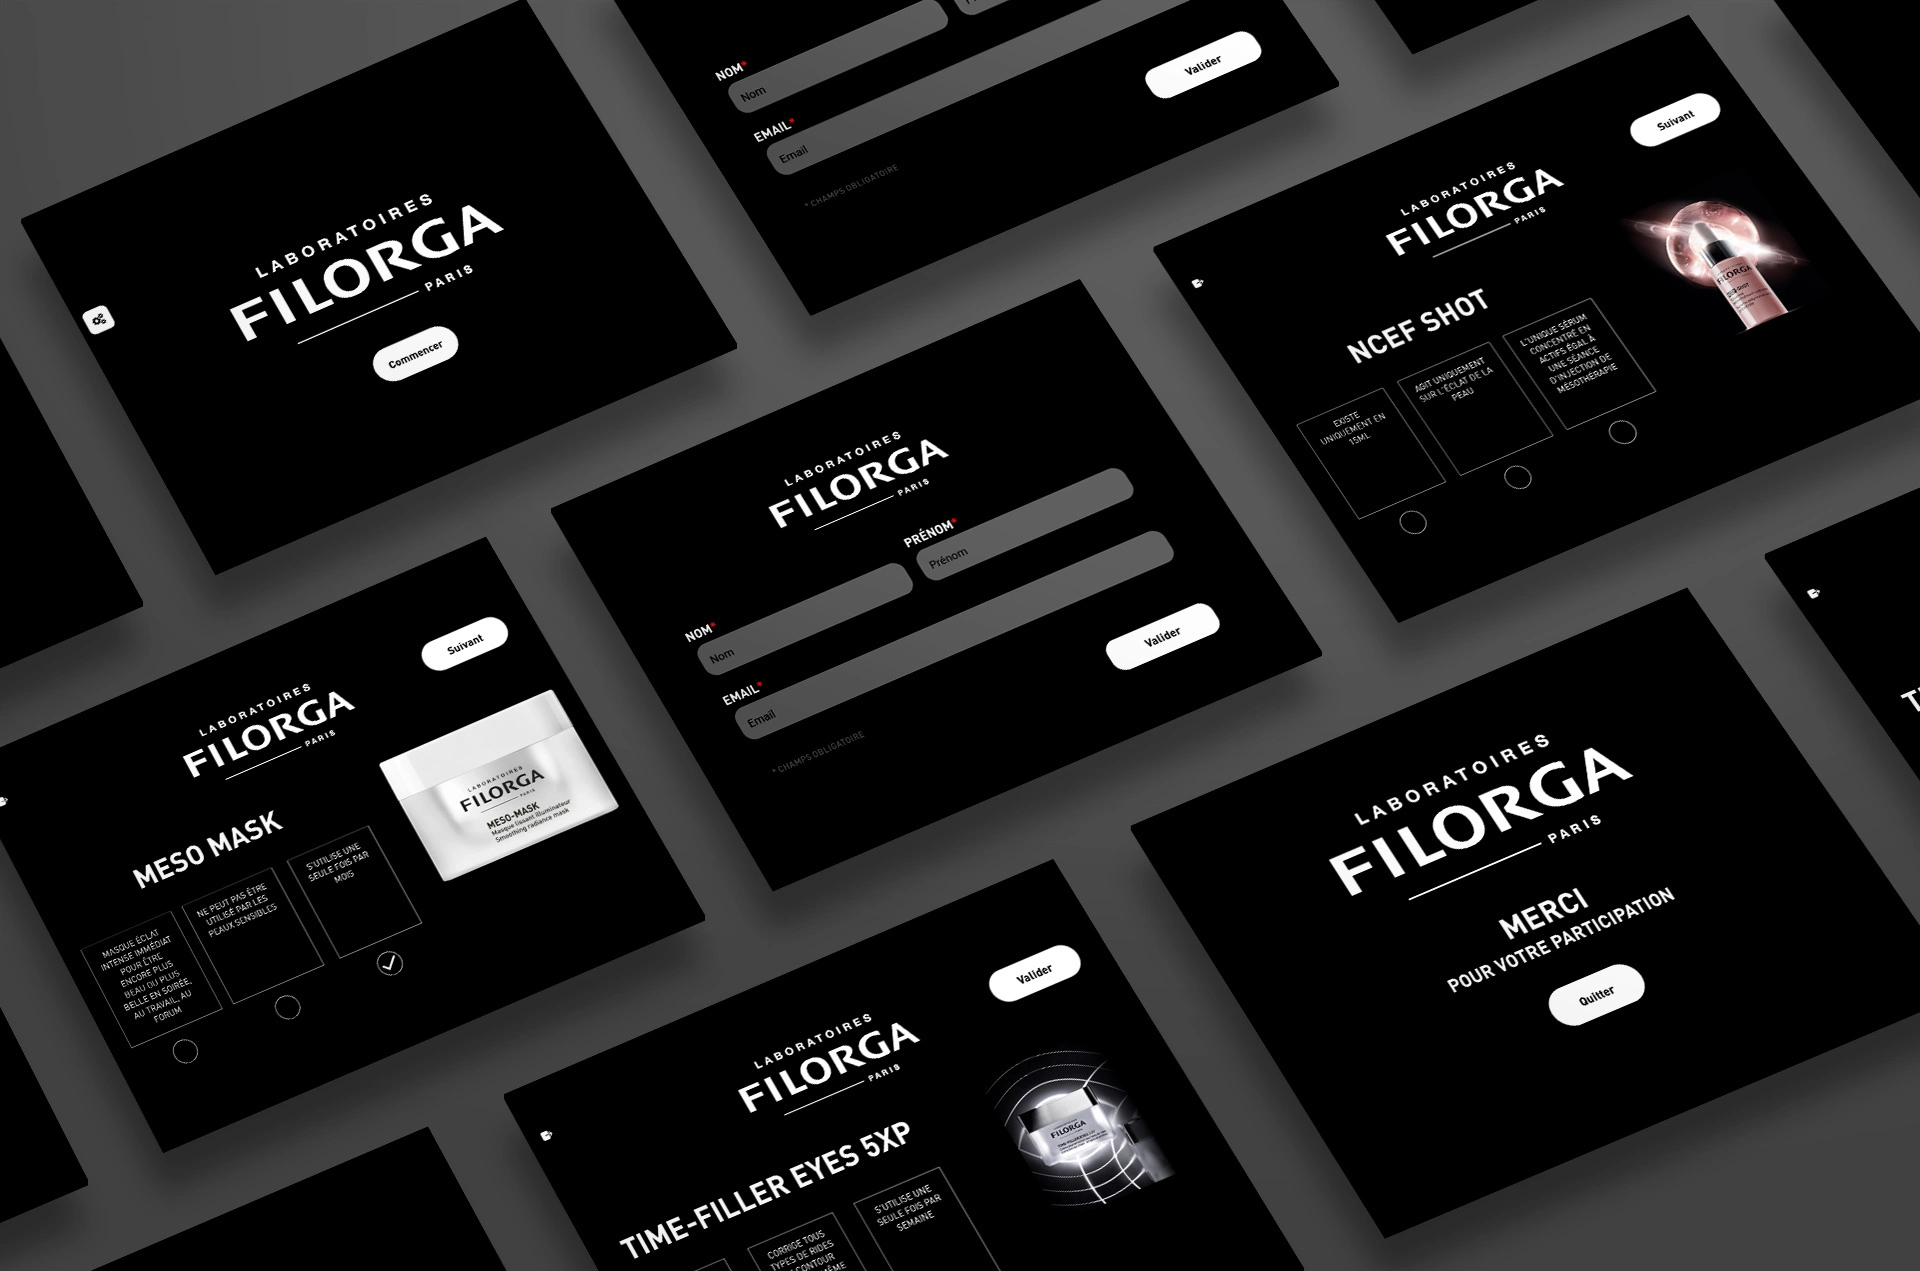 Filorga_Tablet_app